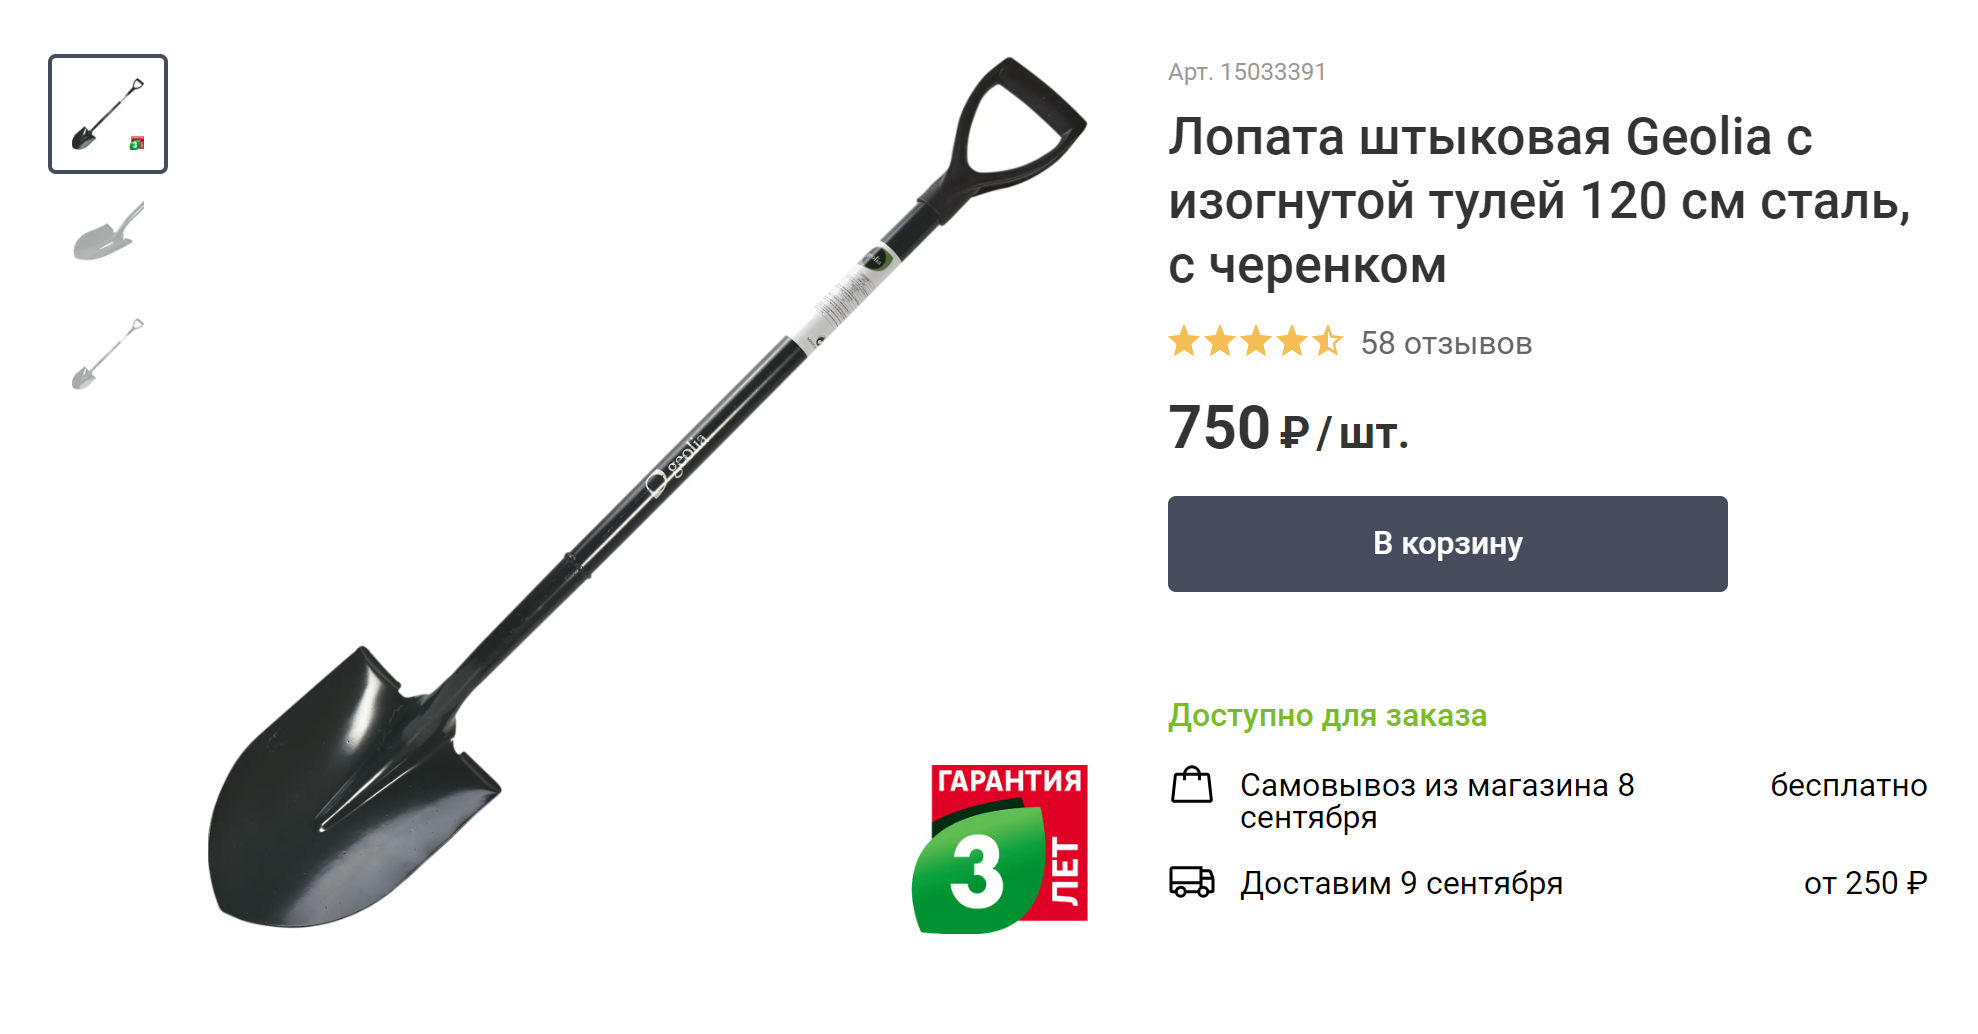 Мы купили три такие лопаты. Источник: leroymerlin.ru